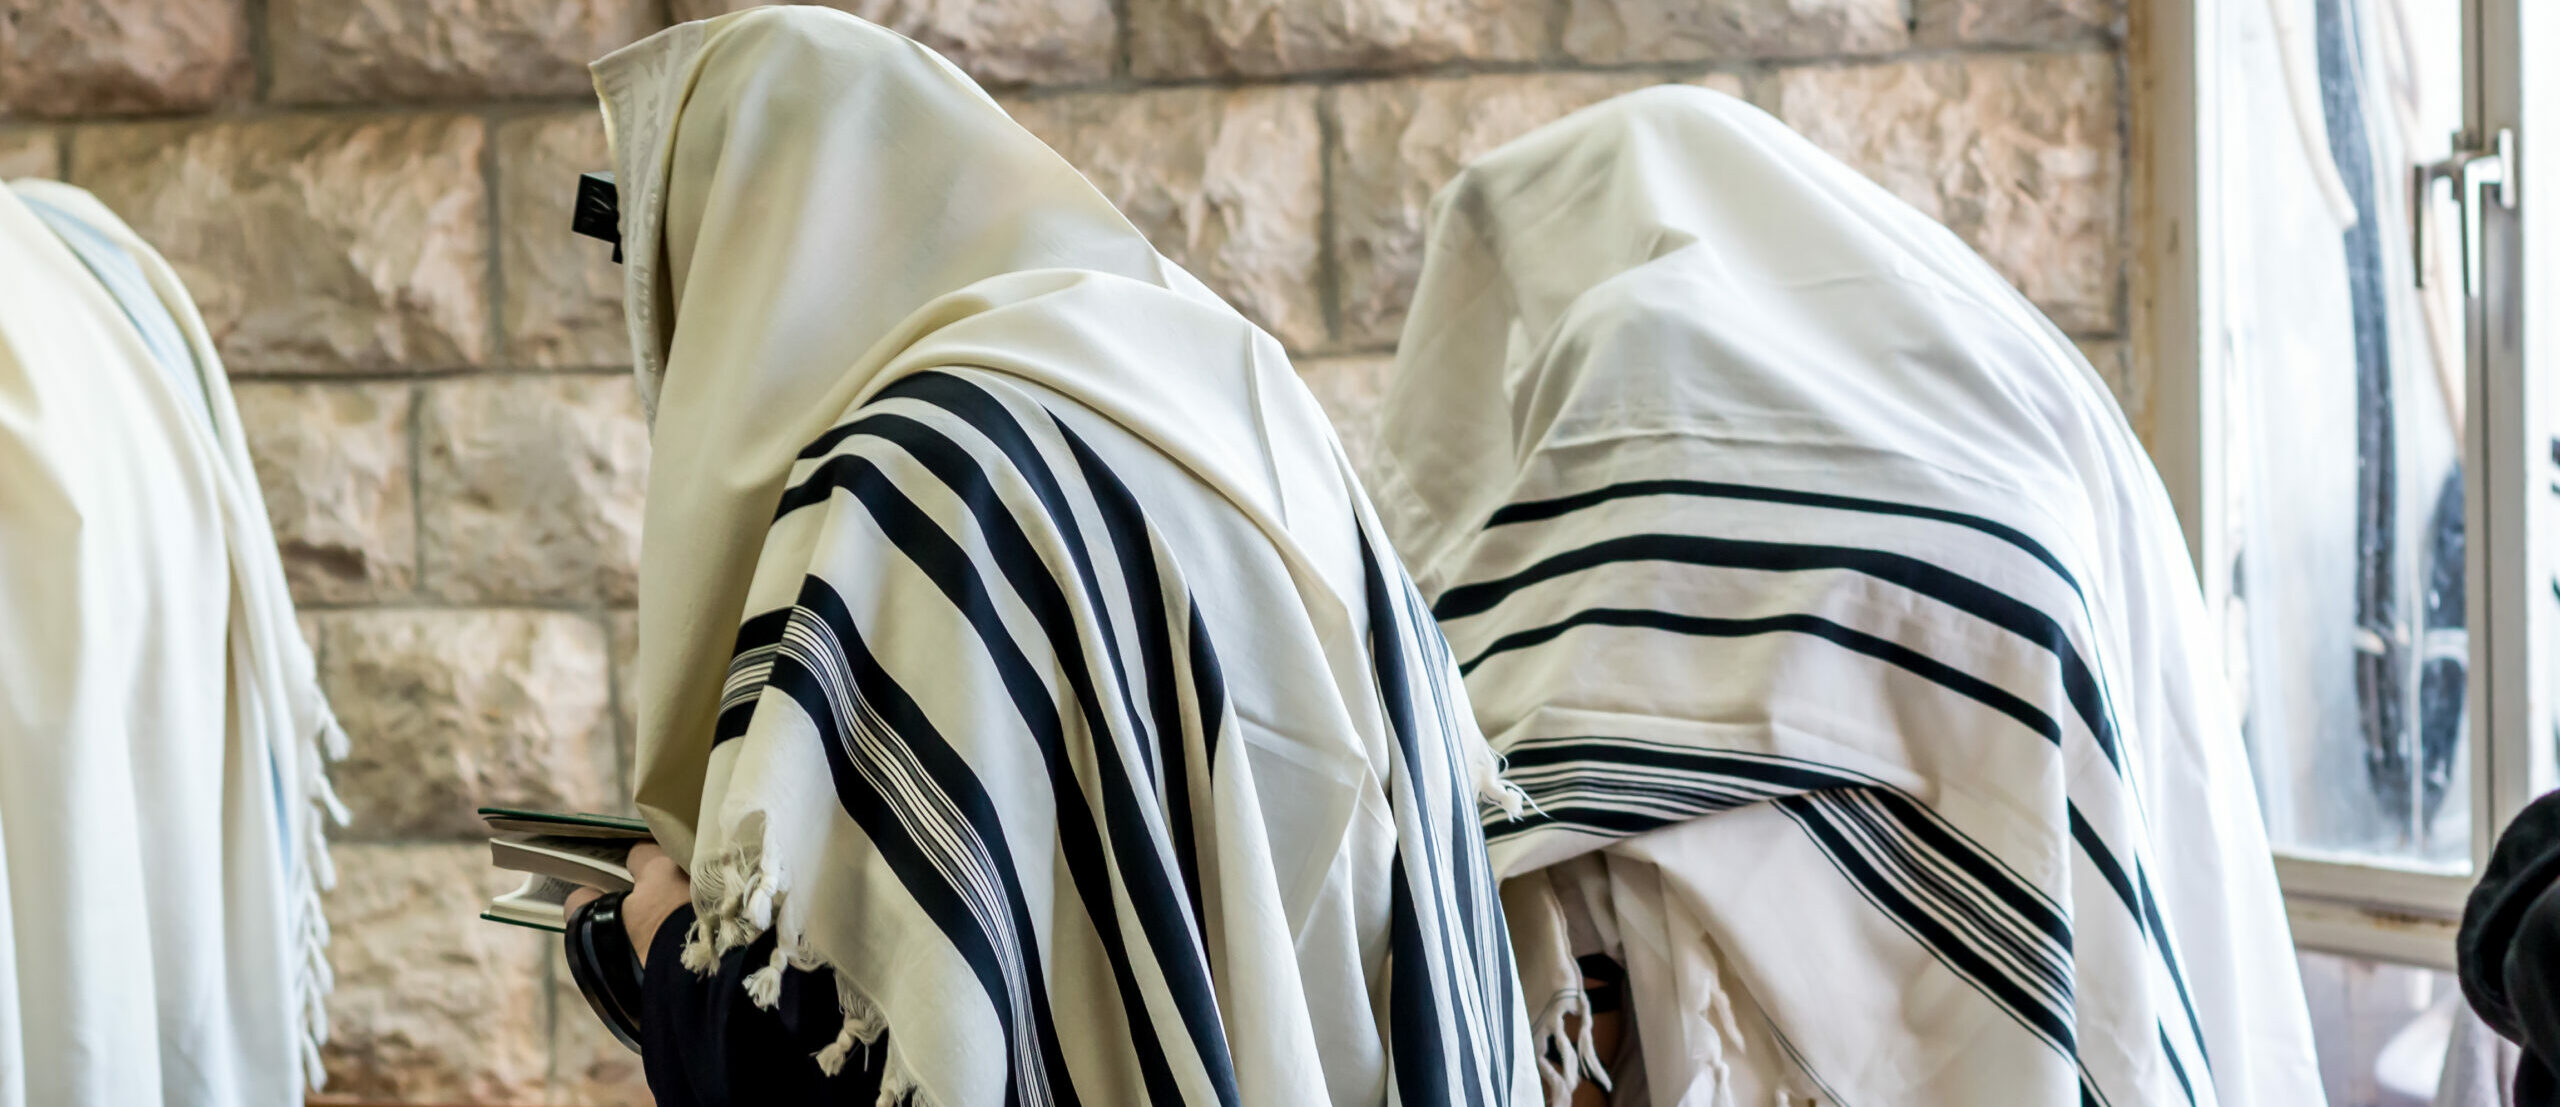 Jewish men praying in a synagogue with tallit